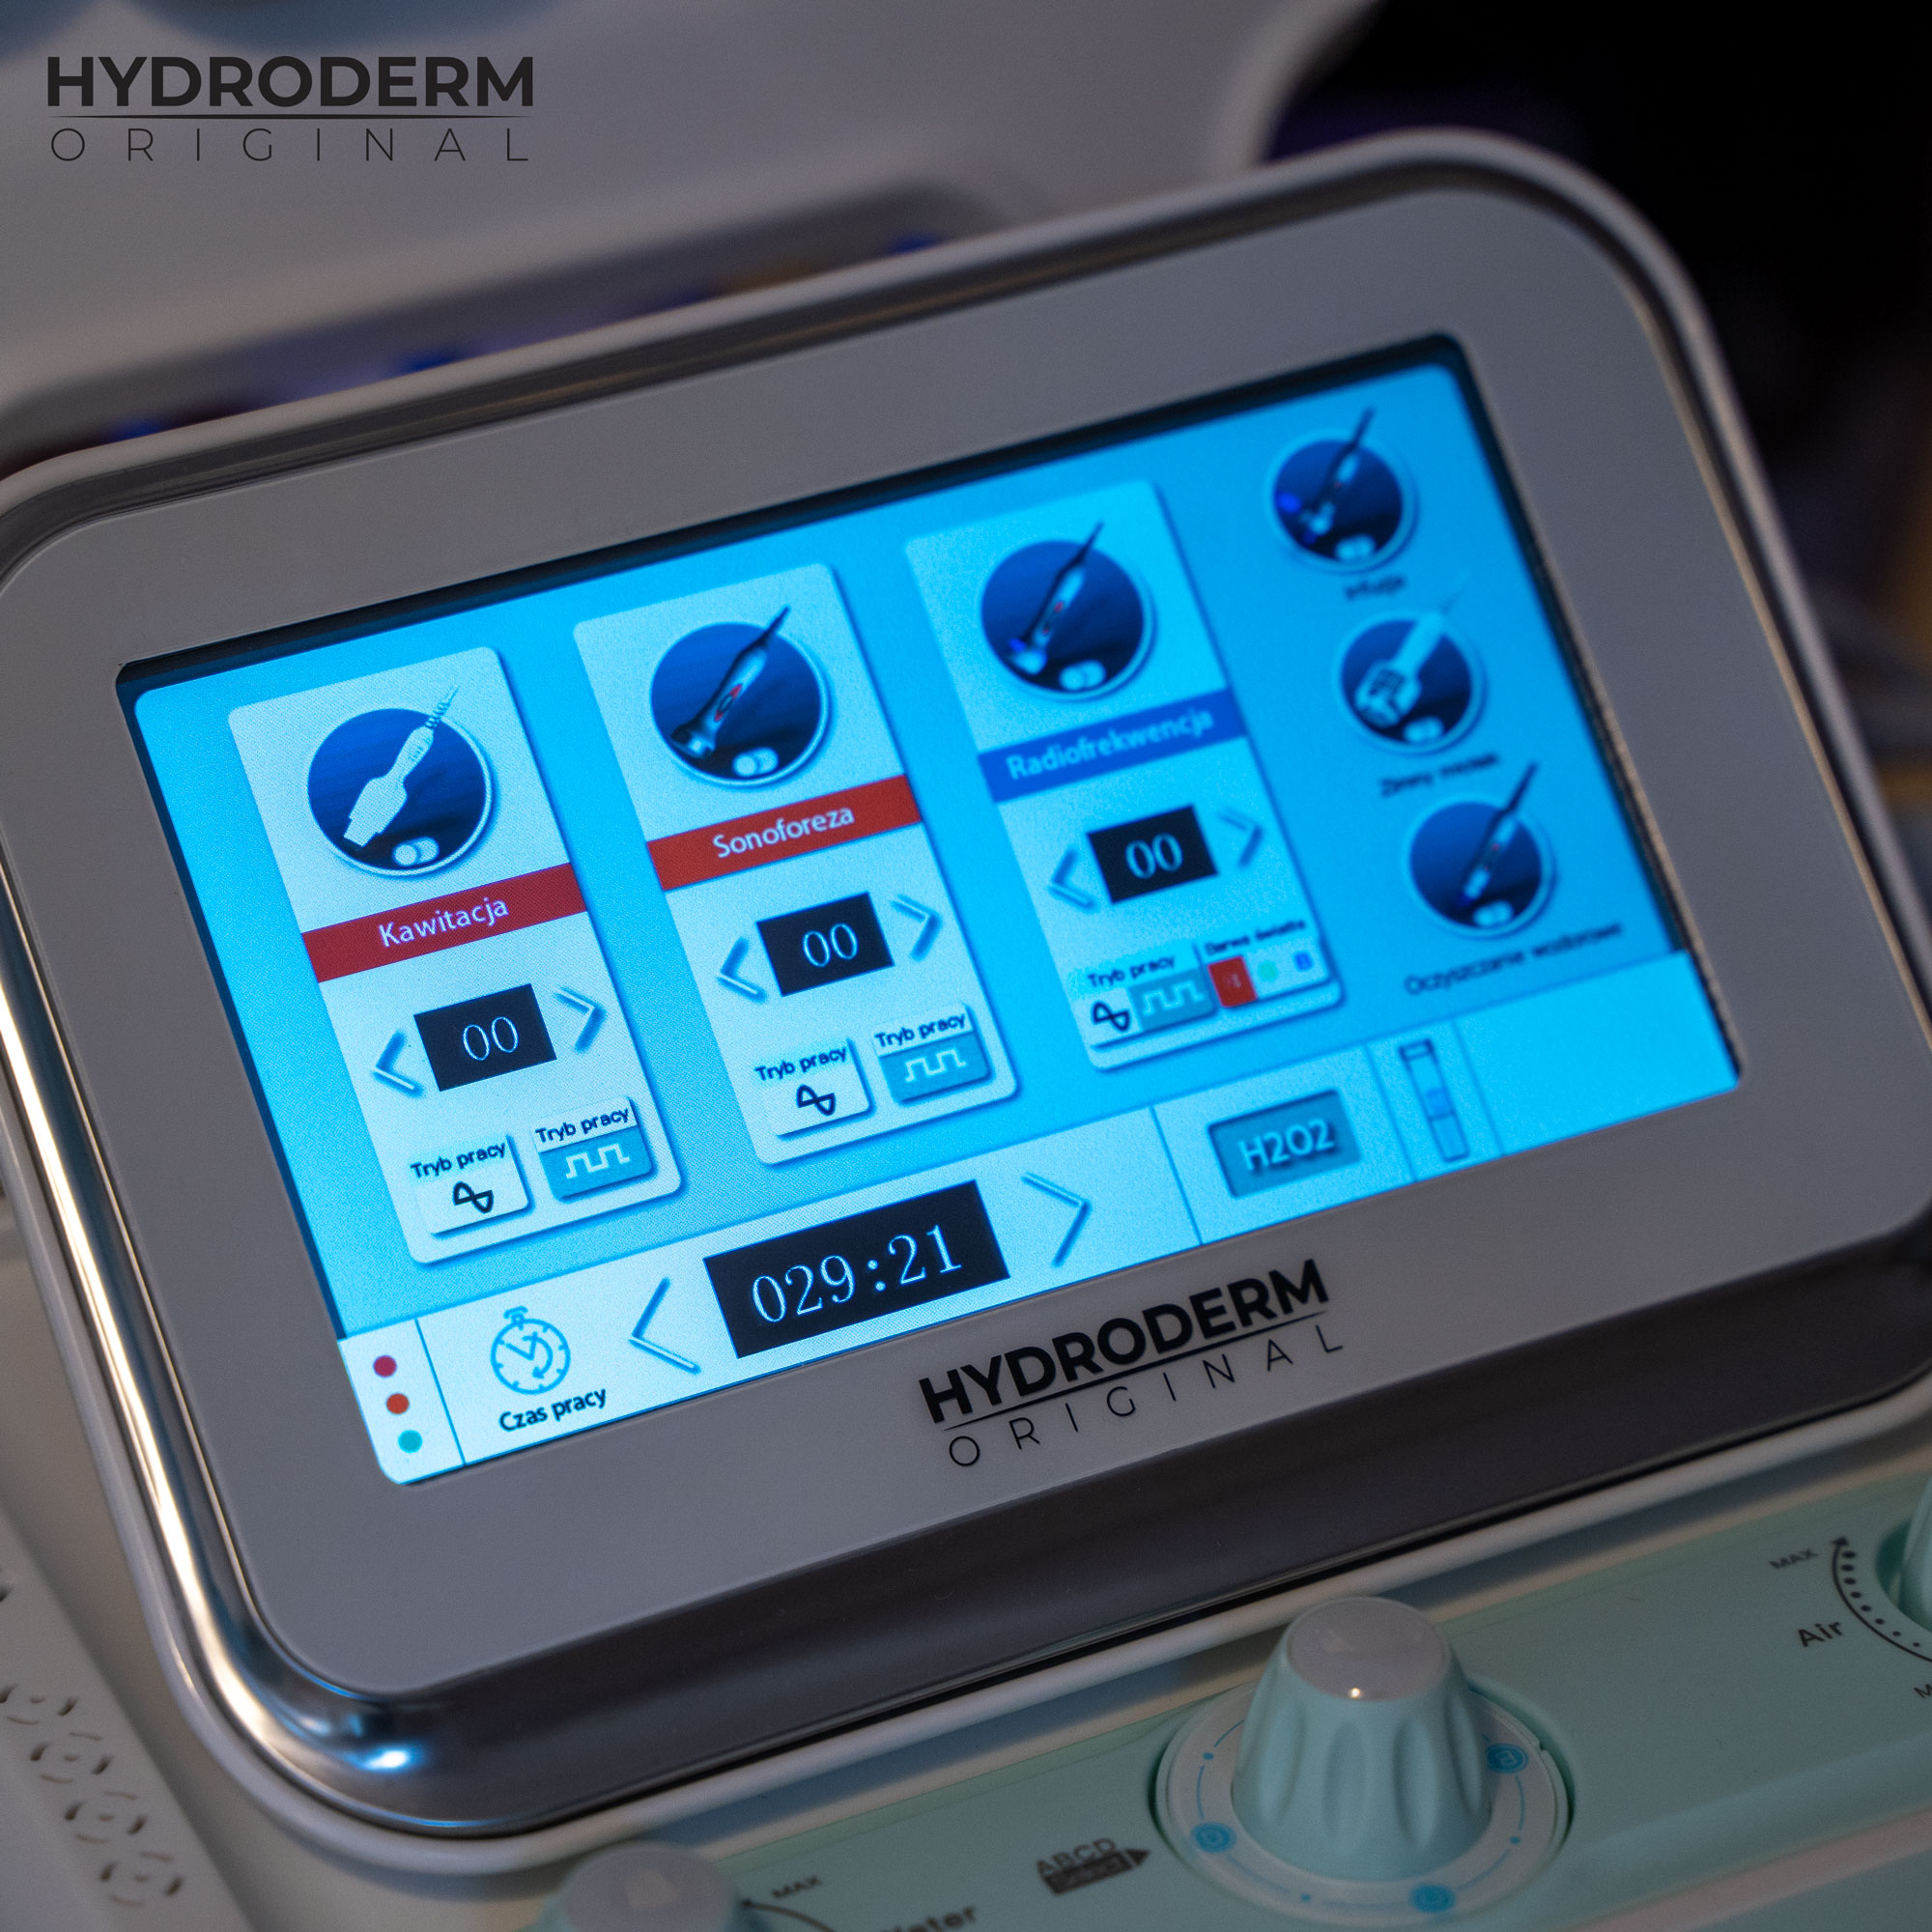 Ekran dotykowy maszyny Hydroderm 9w1 Original między innymi umożliwia przełączyć tryb pracy